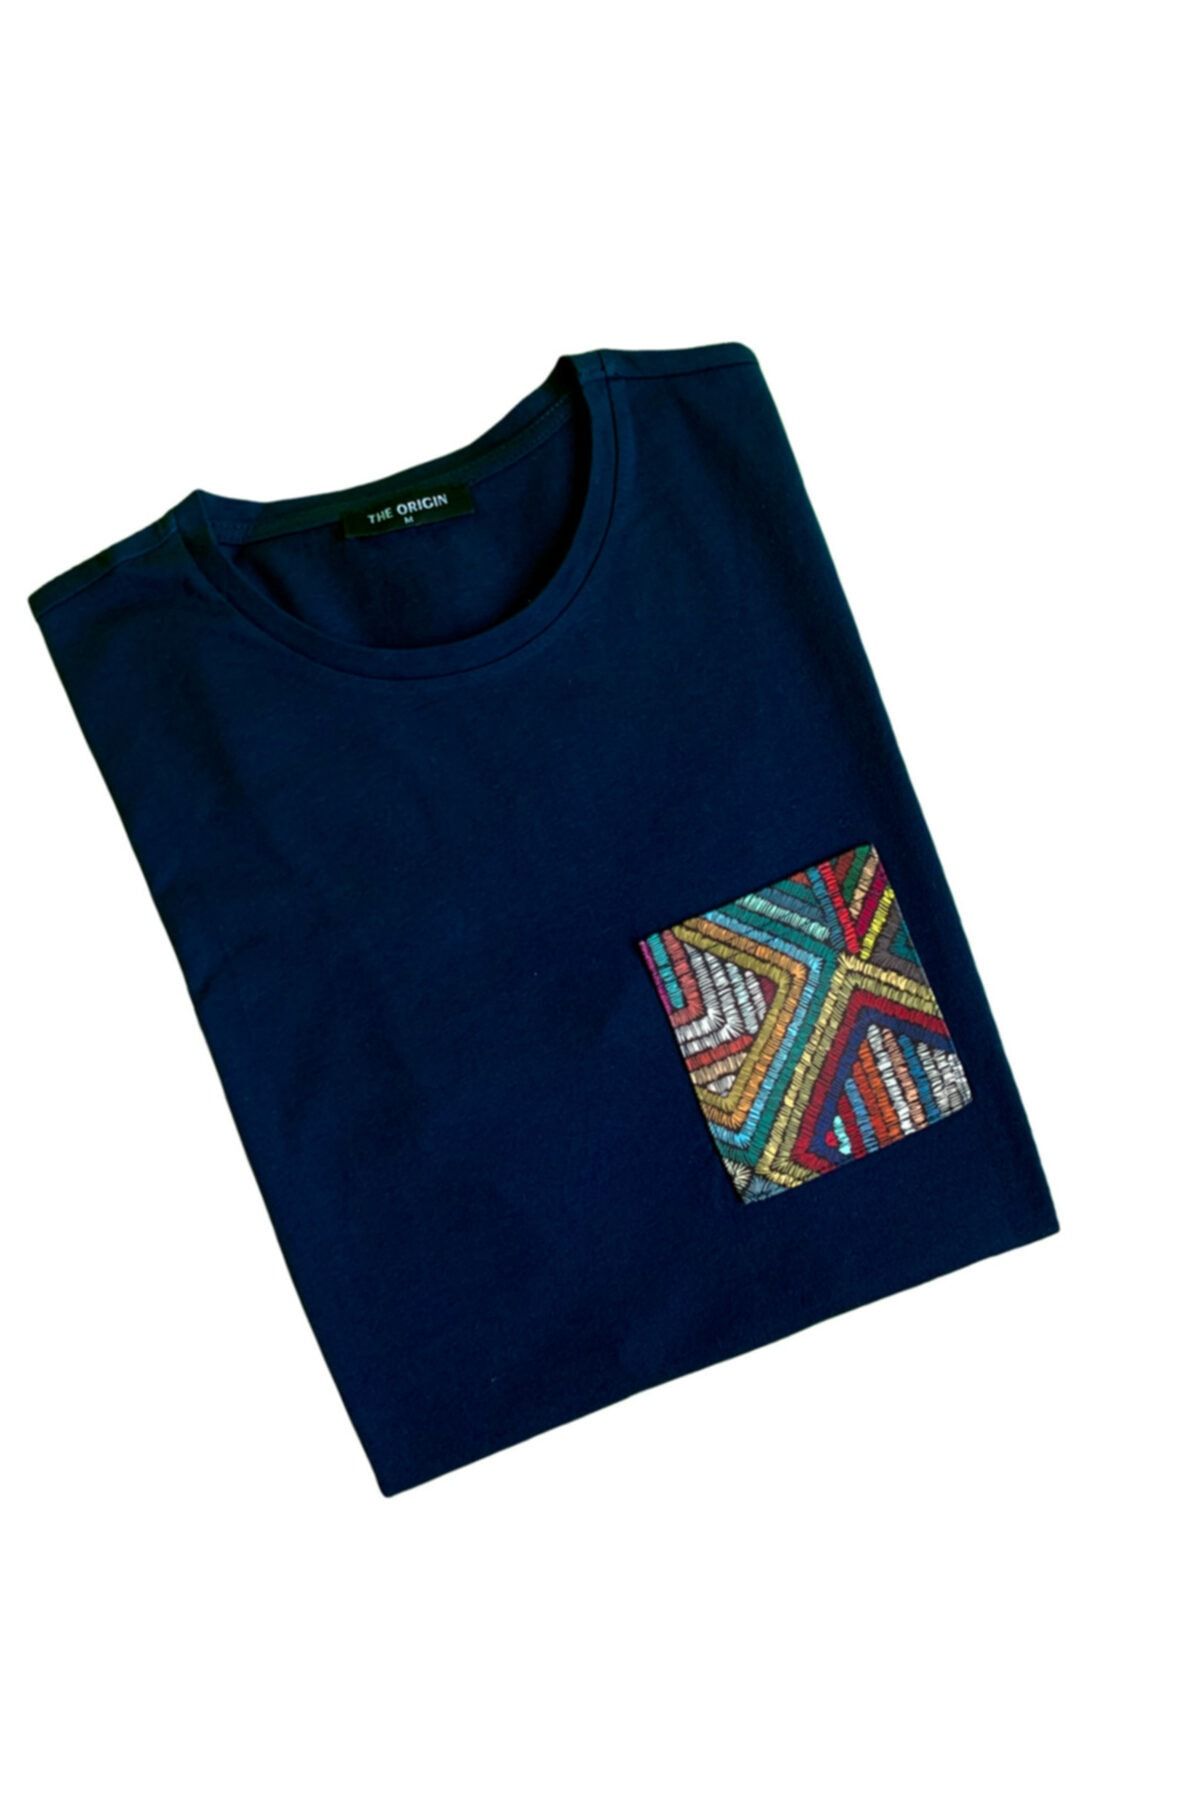 THE ORIGIN Genç Çoçuk T-shirt Lacivert Etnik Desen Cep Detaylı